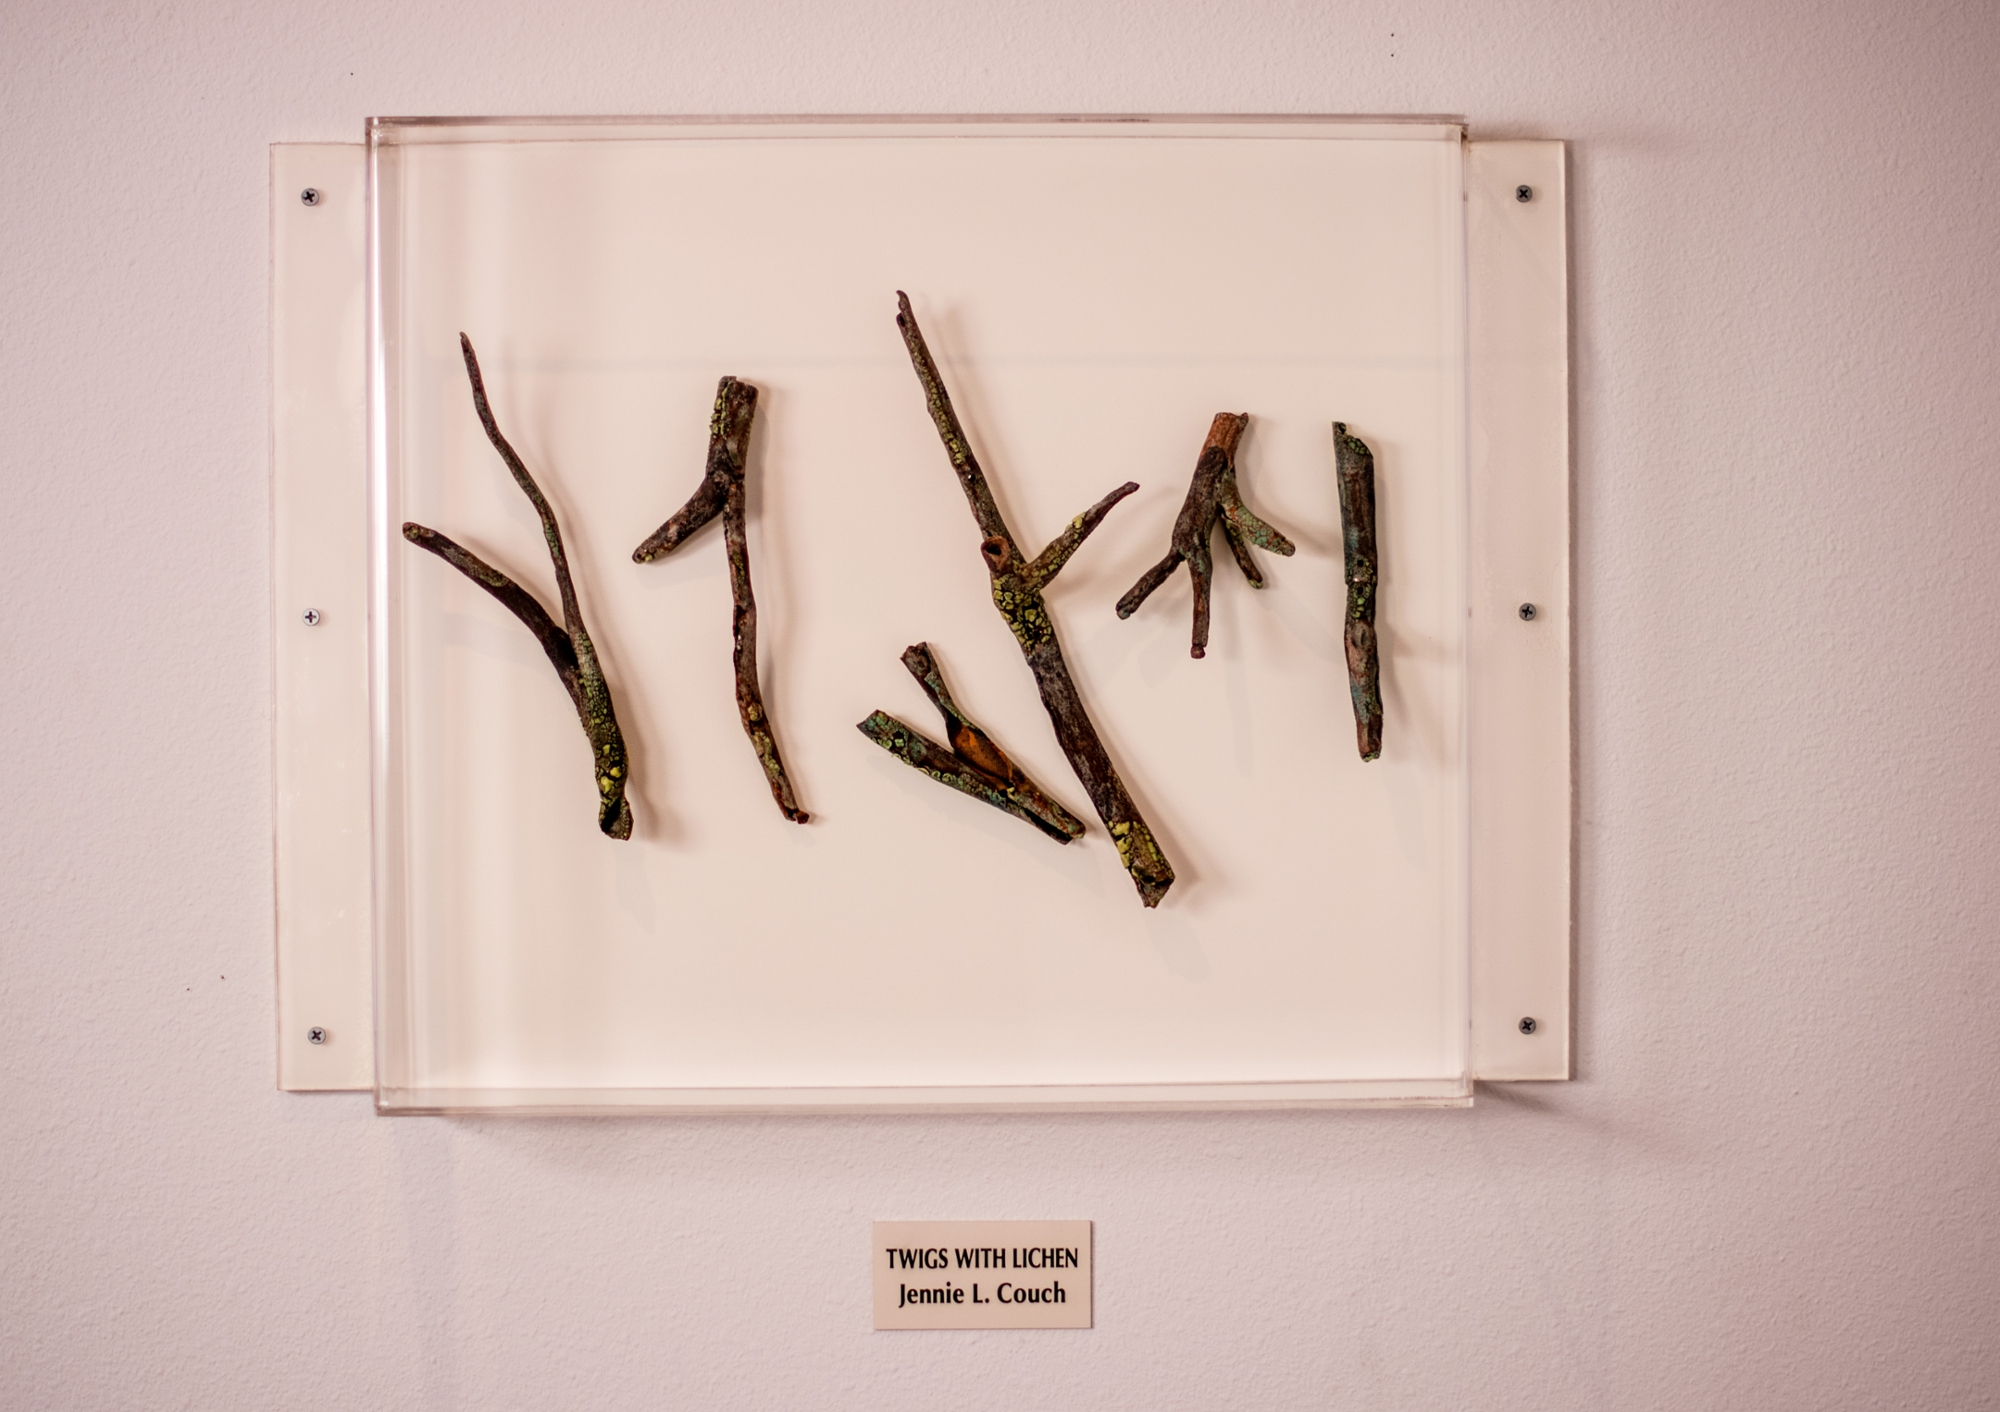 2001 Sculpture: Twigs with Lichen